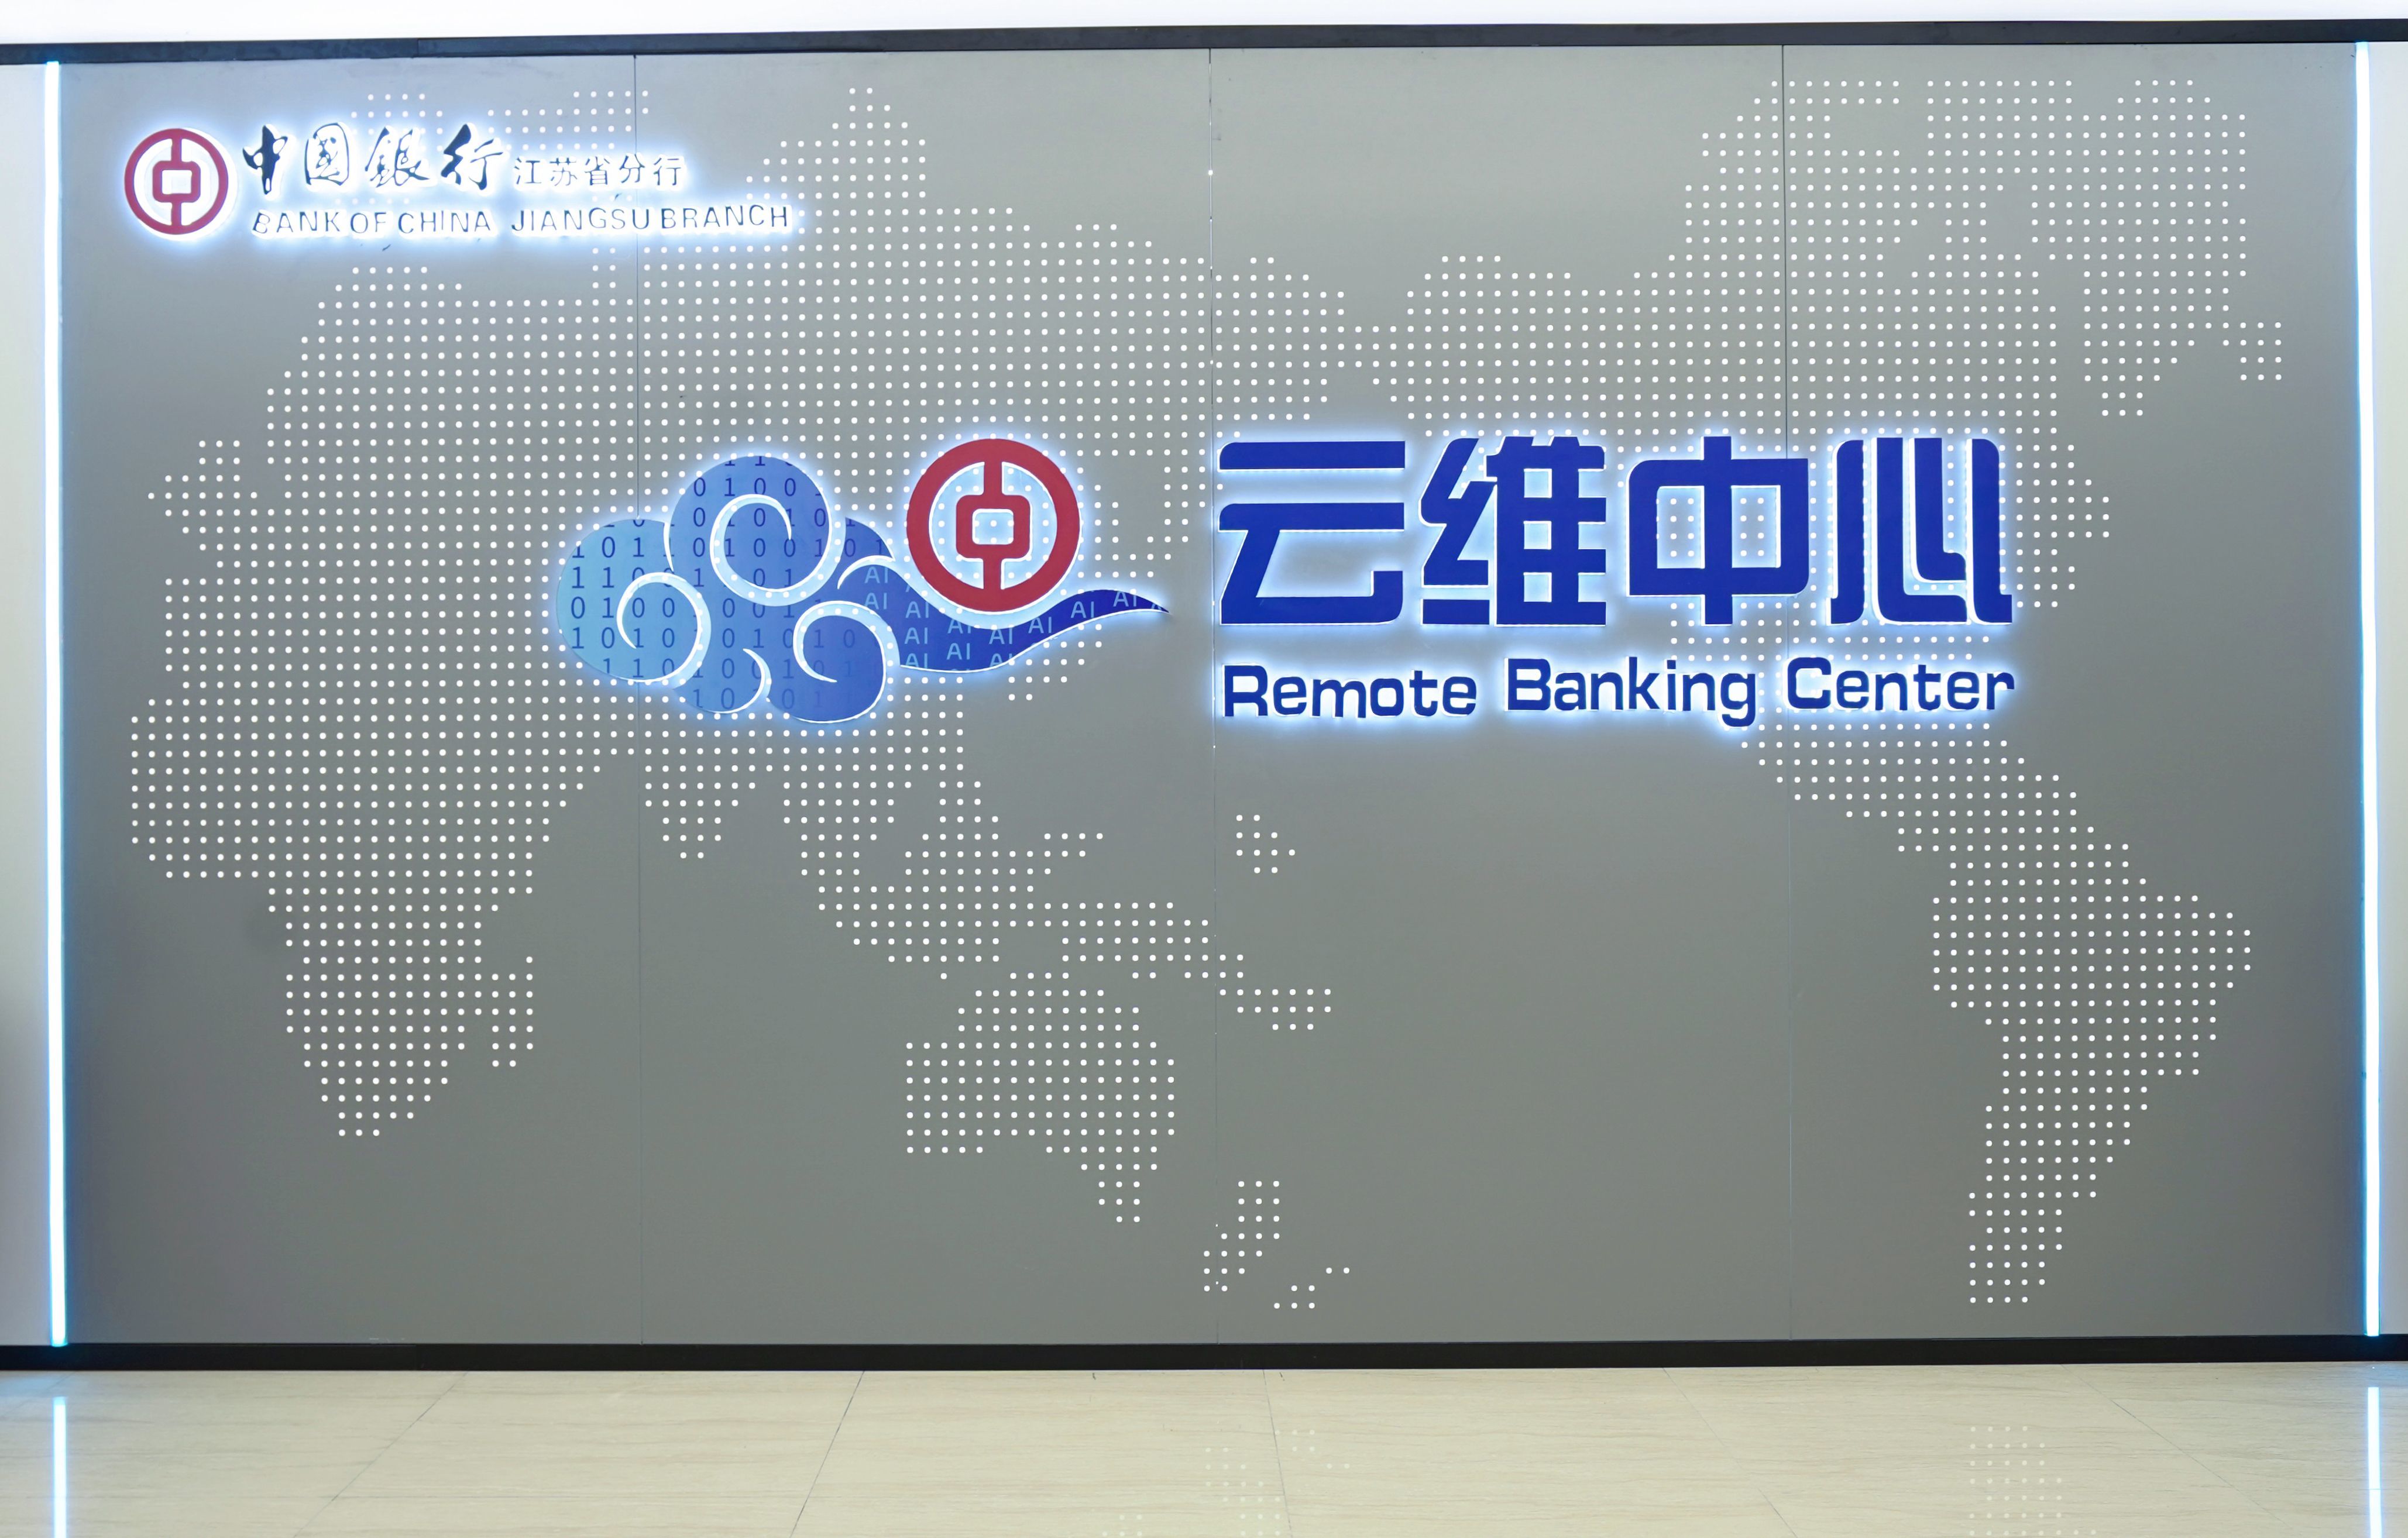 “云維中心”打造“超級空中分行” 中國銀行江蘇省分行加速探索數字化轉型遠程銀行建設